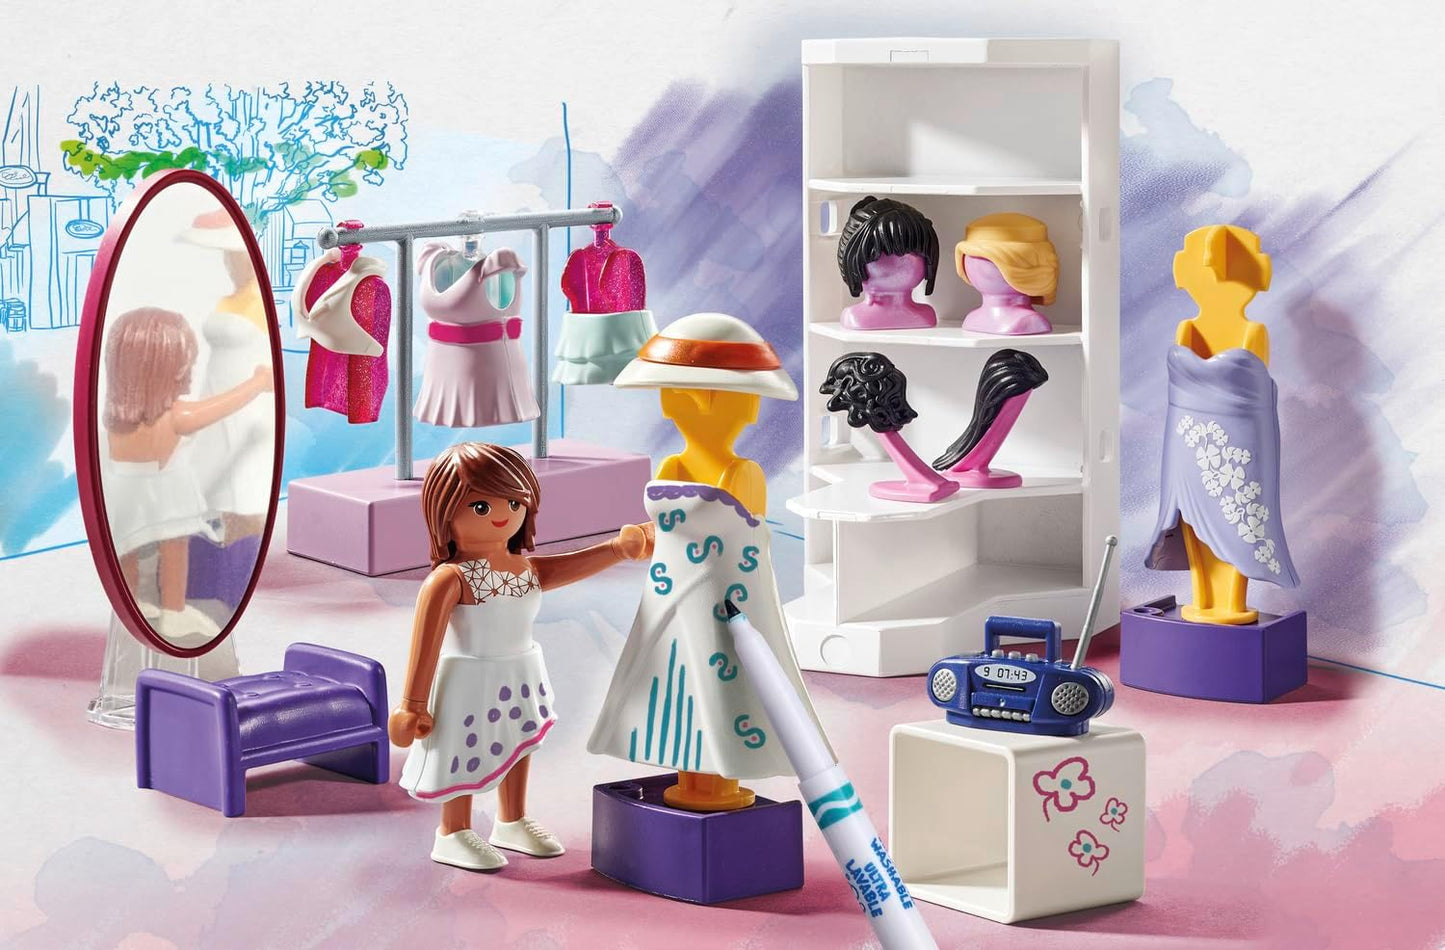 Playmobil 71373 Camarim Colorido, crie designs exclusivos para estilos de roupas, com marcadores e acessórios solúveis em água, dramatizações imaginativas, conjuntos de jogos artísticos adequados para crianças de 5 anos ou mais